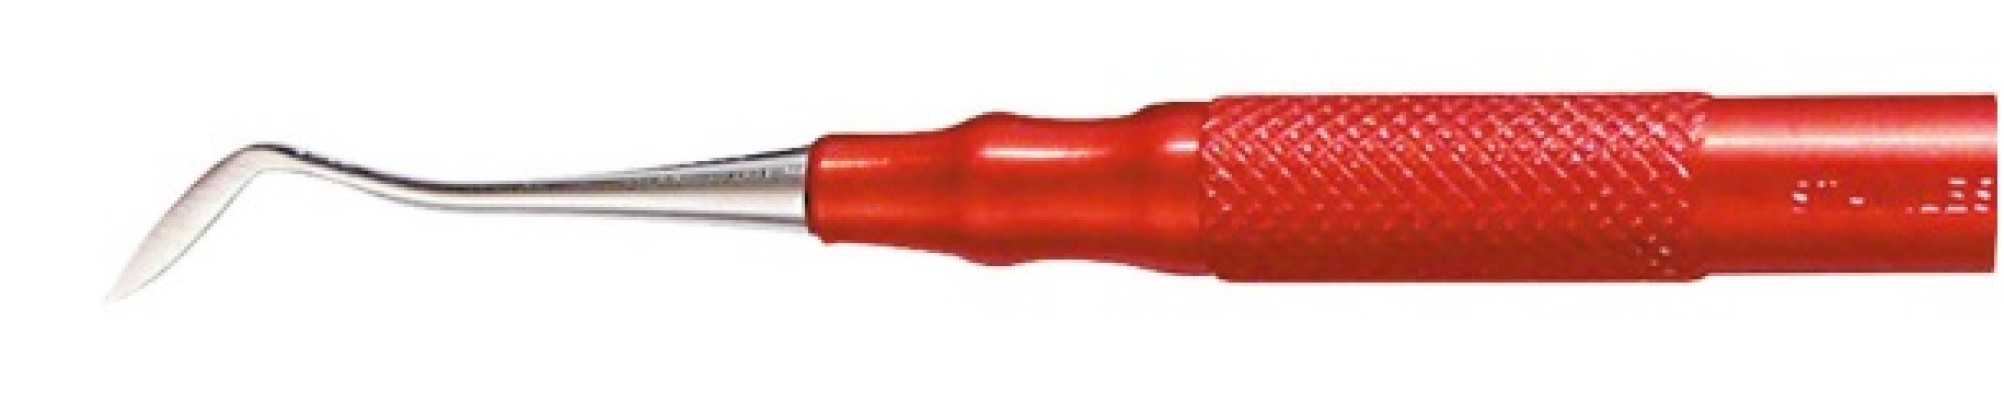 Моделировочный инструмент для работы с воском  красный  OMNIDENT ( Германия)  арт15799